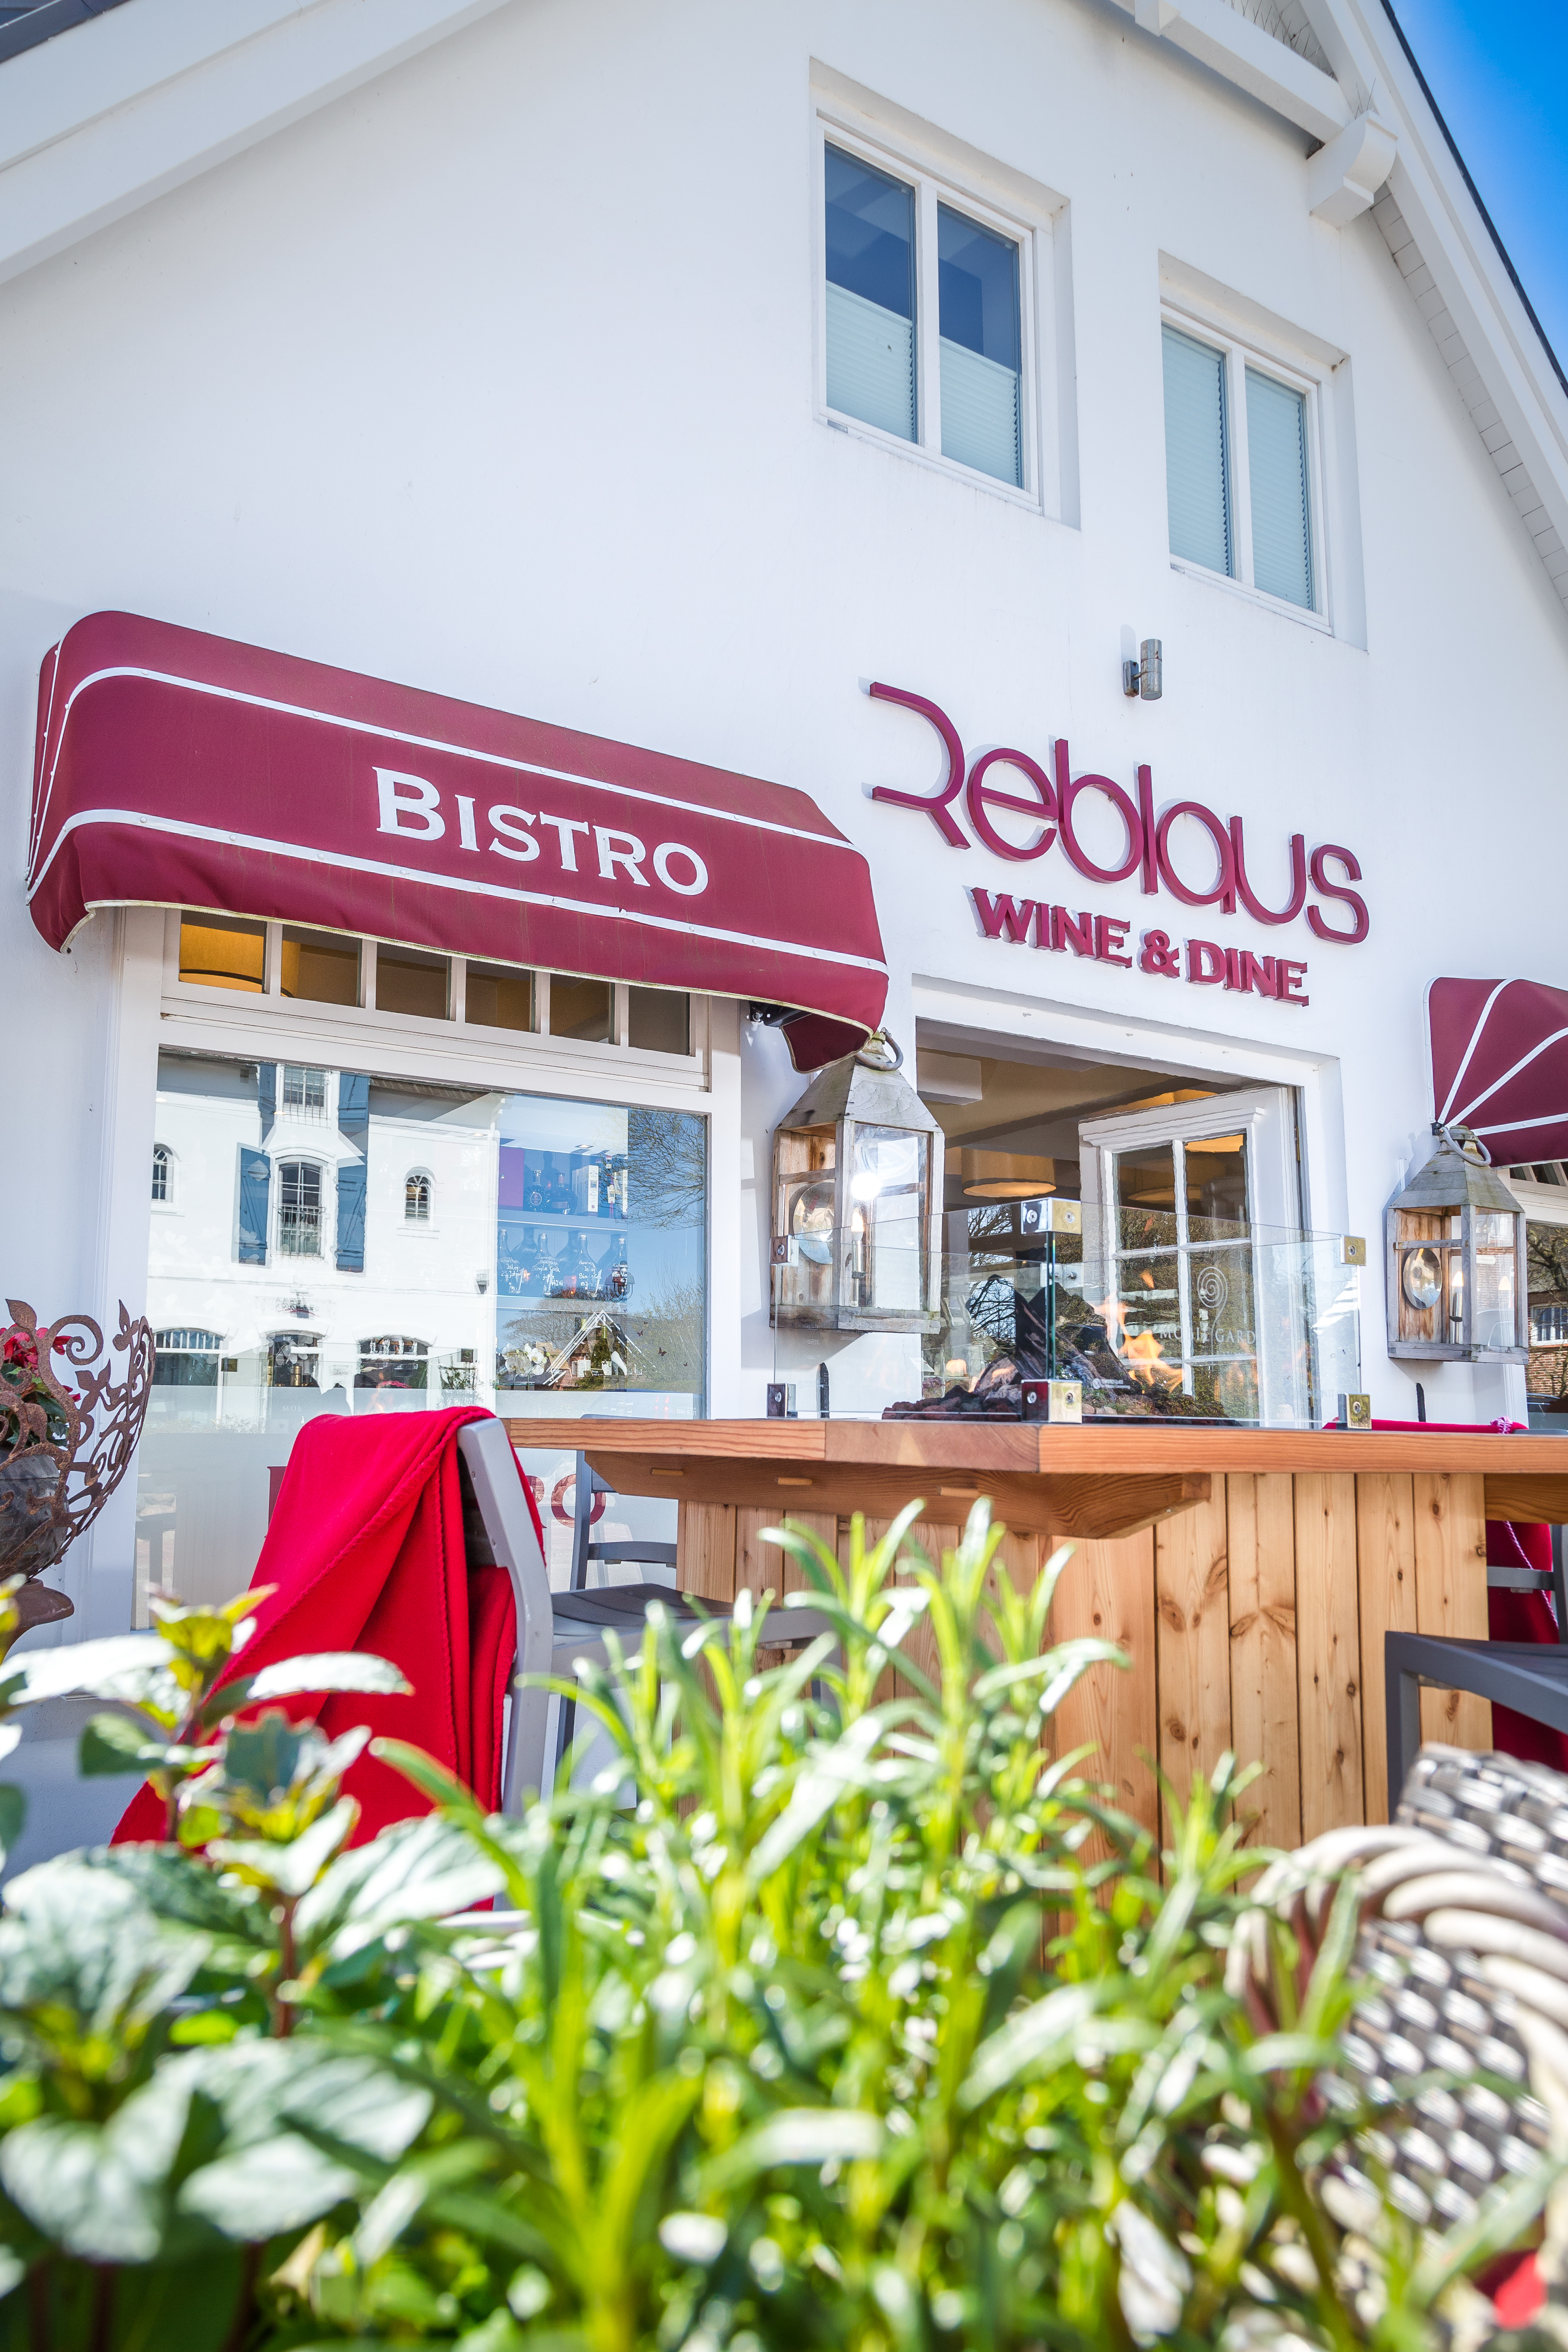 Reblaus Wine & Dine in Keitum auf Sylt: Ein Bistro mit Stammgast-Potential